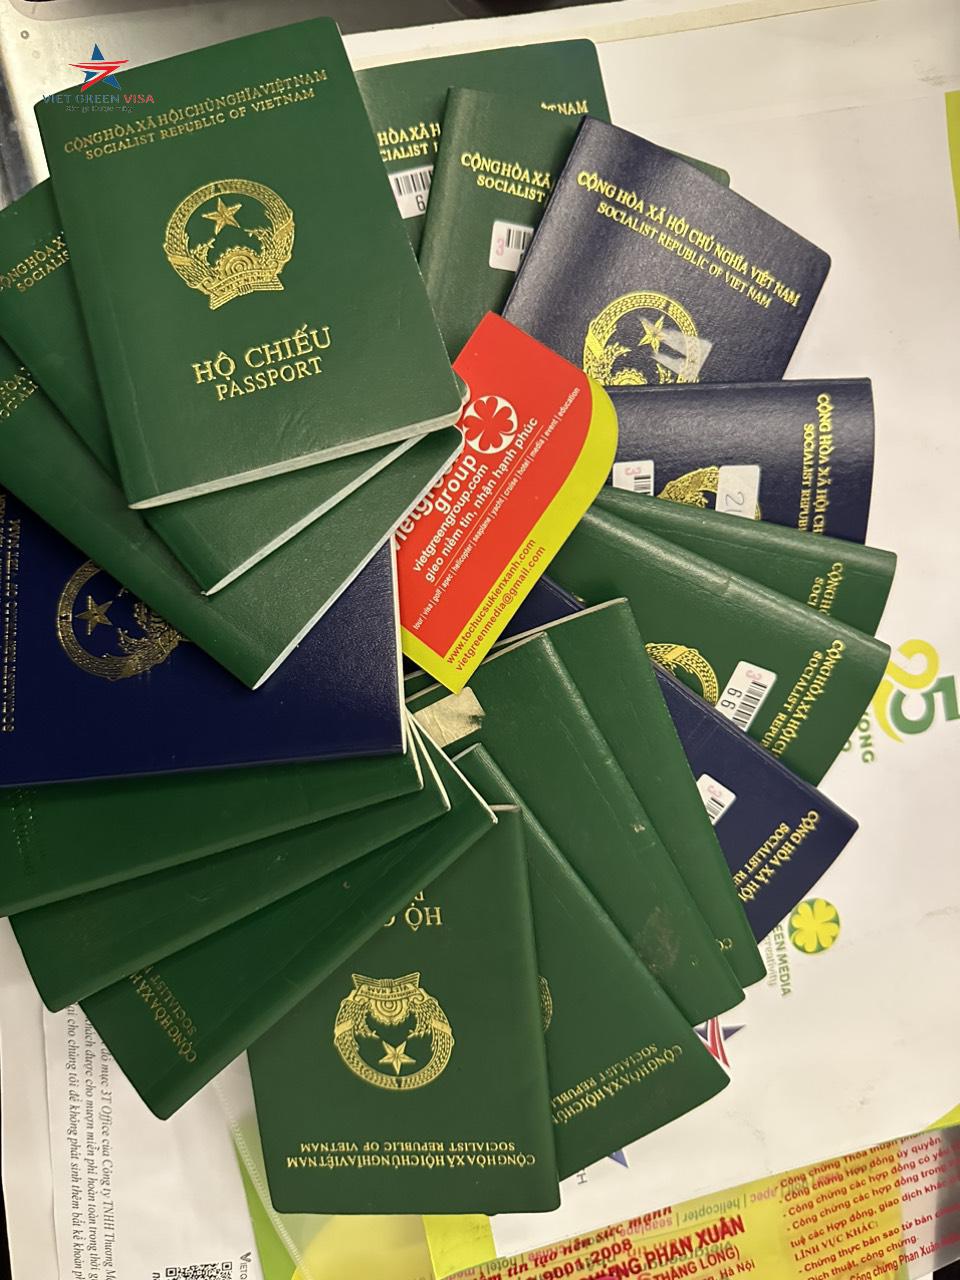 Dịch vụ làm hộ chiếu nhanh tại Đà Nẵng